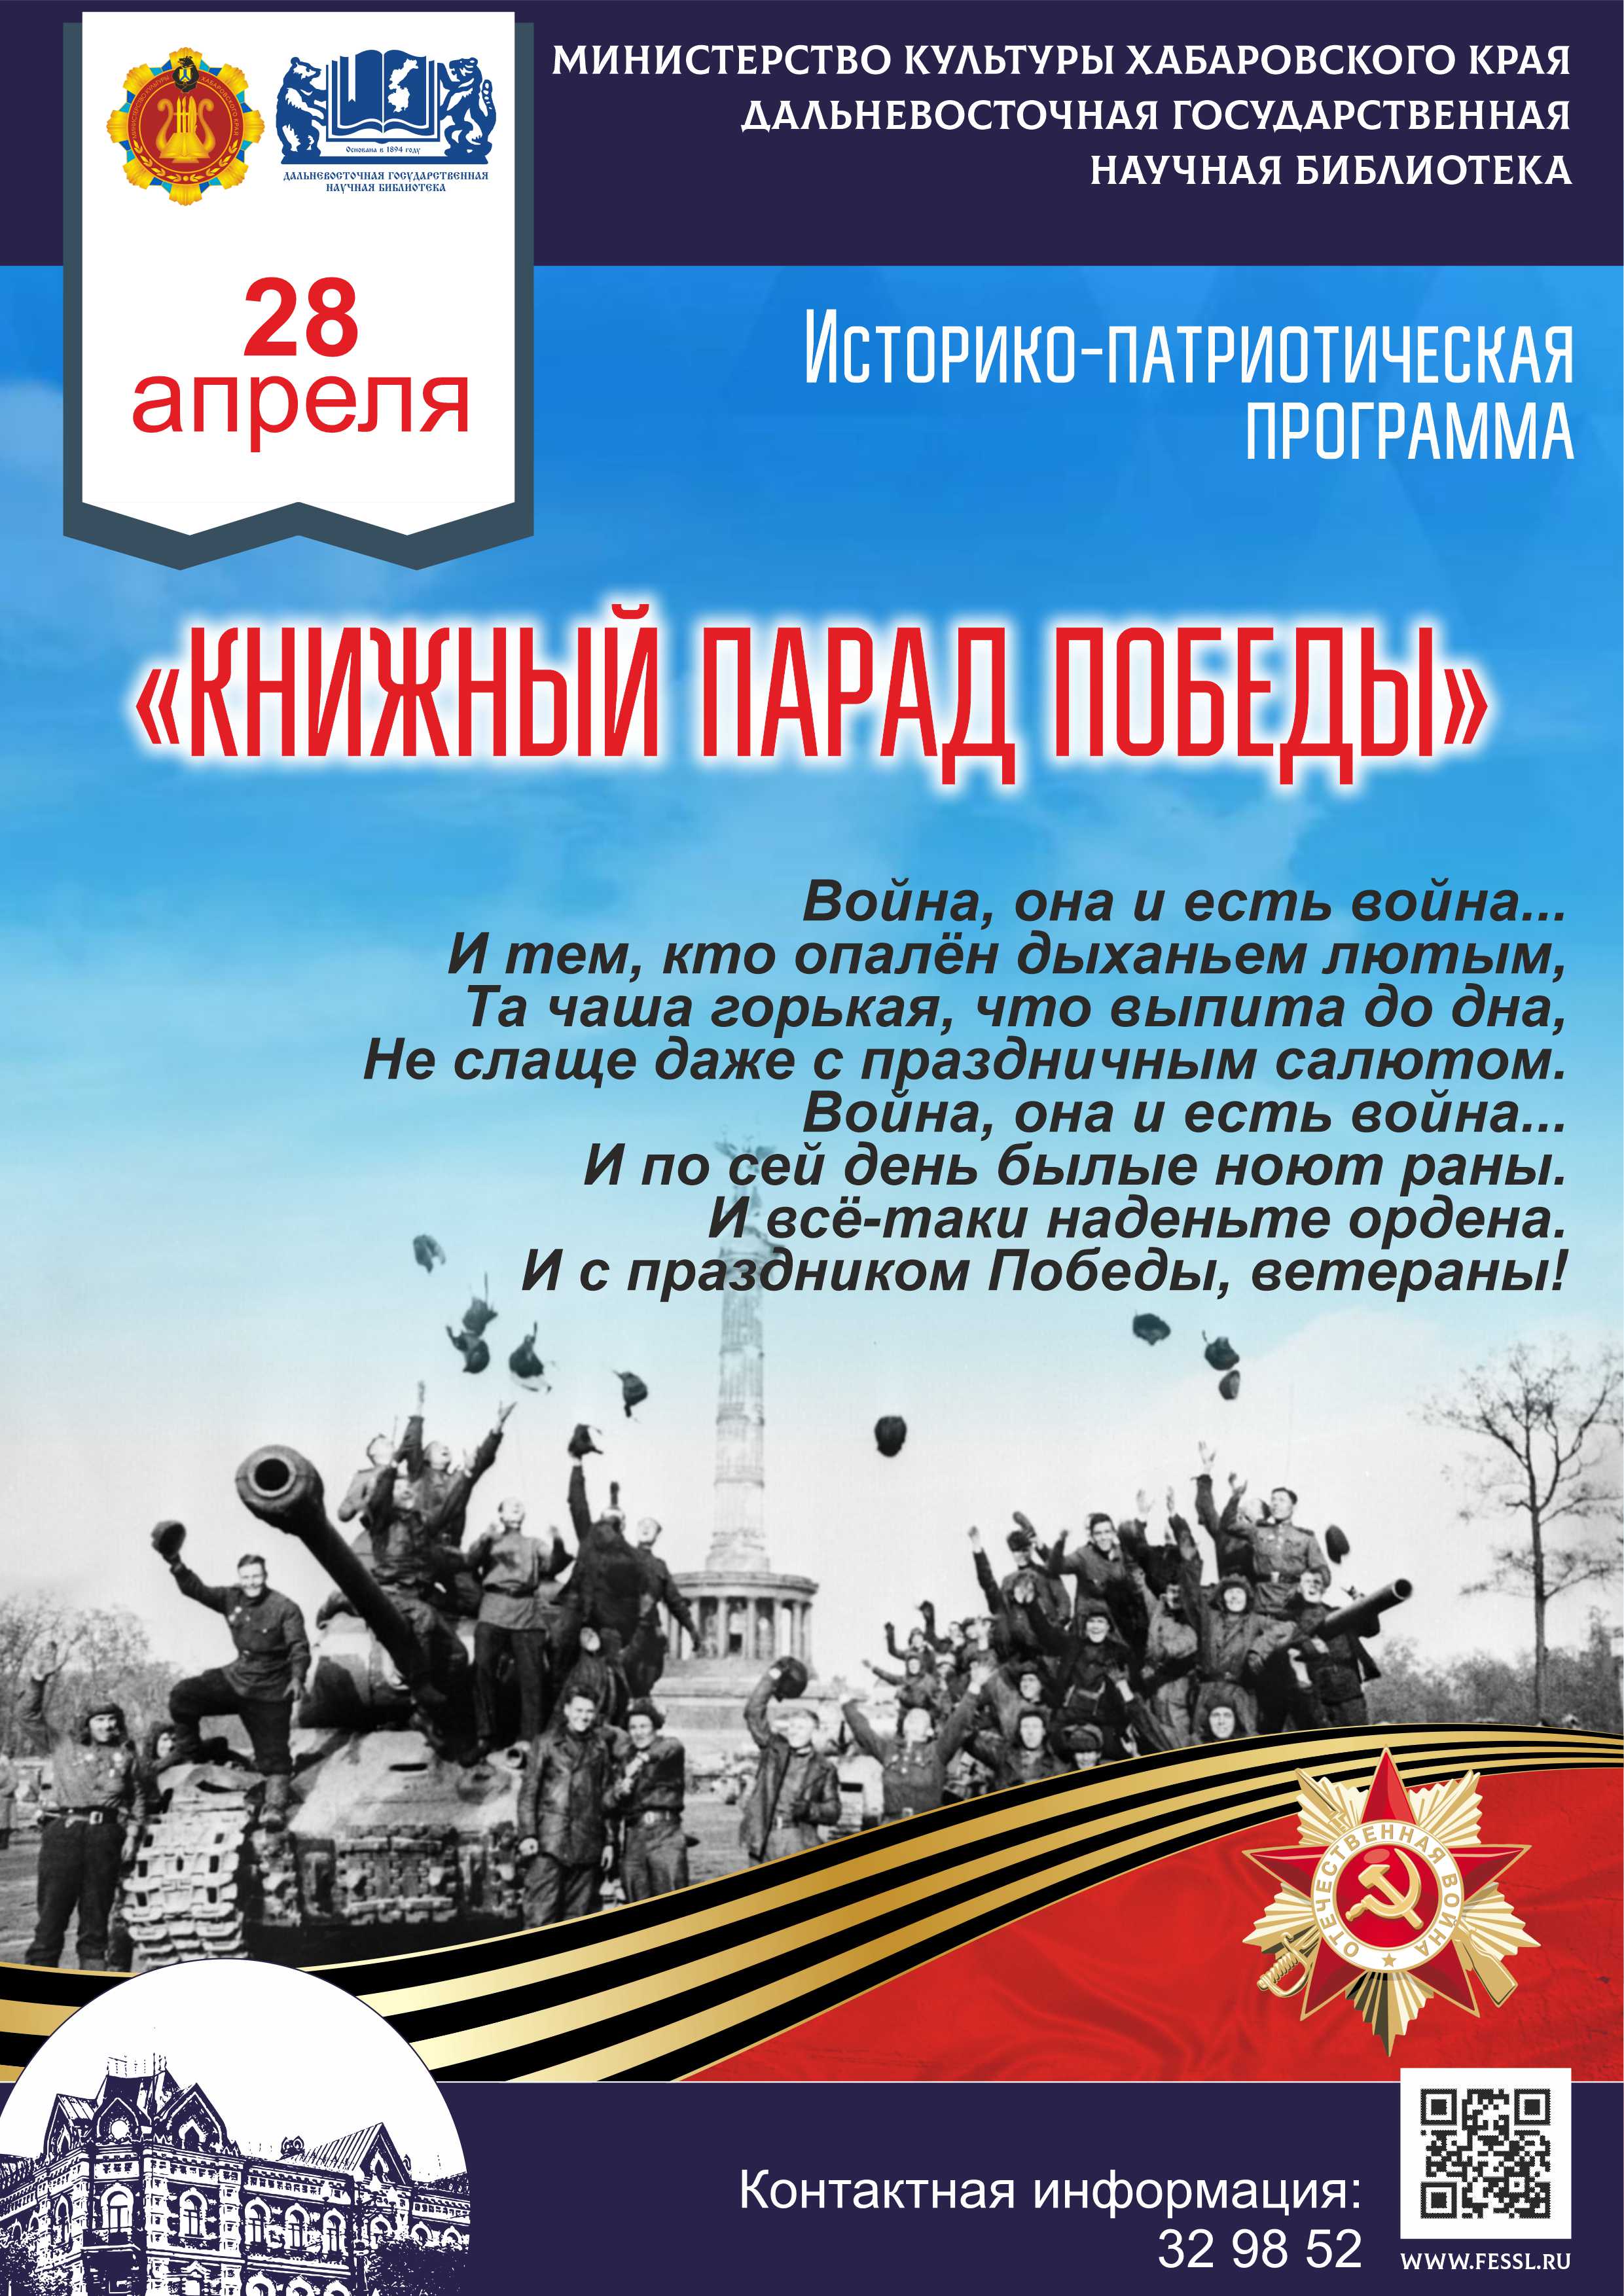 Библиотека представляет историко-патриотическую программу «Книжный парад Победы».